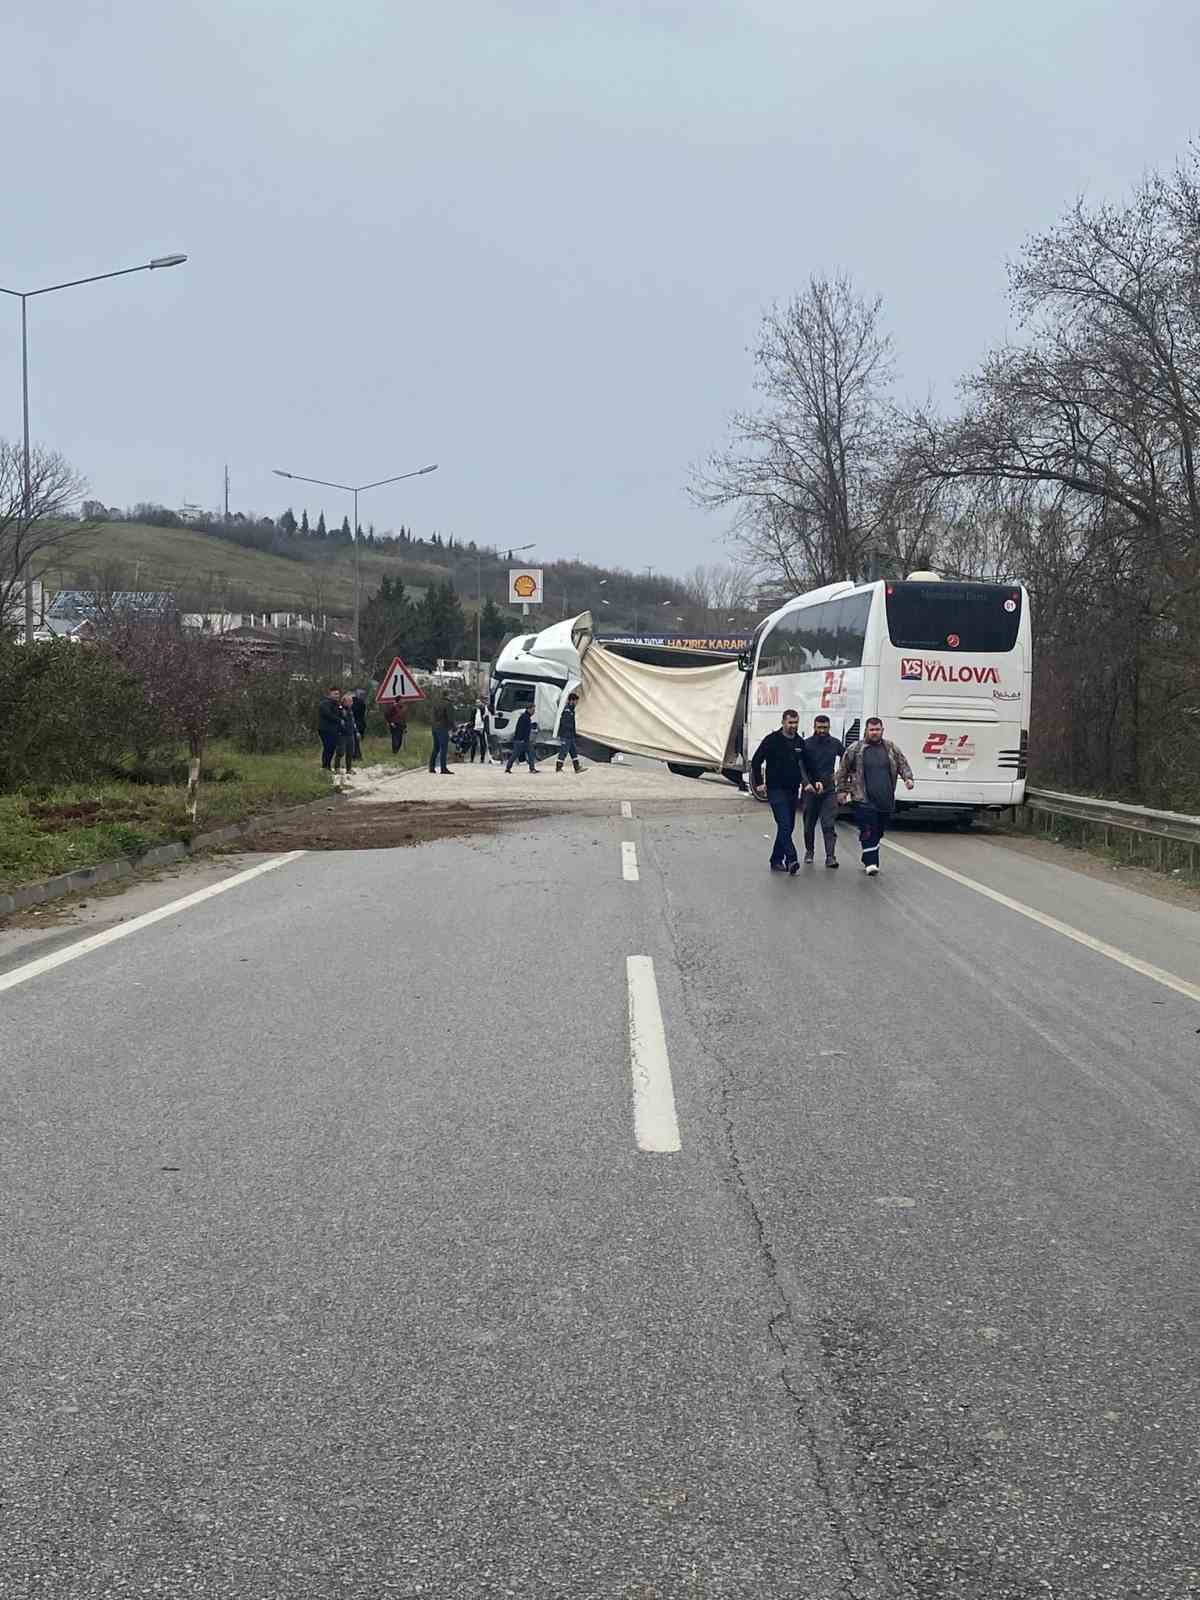 Yalova’da devrilen mıcır yüklü tıra otobüs çarptı
